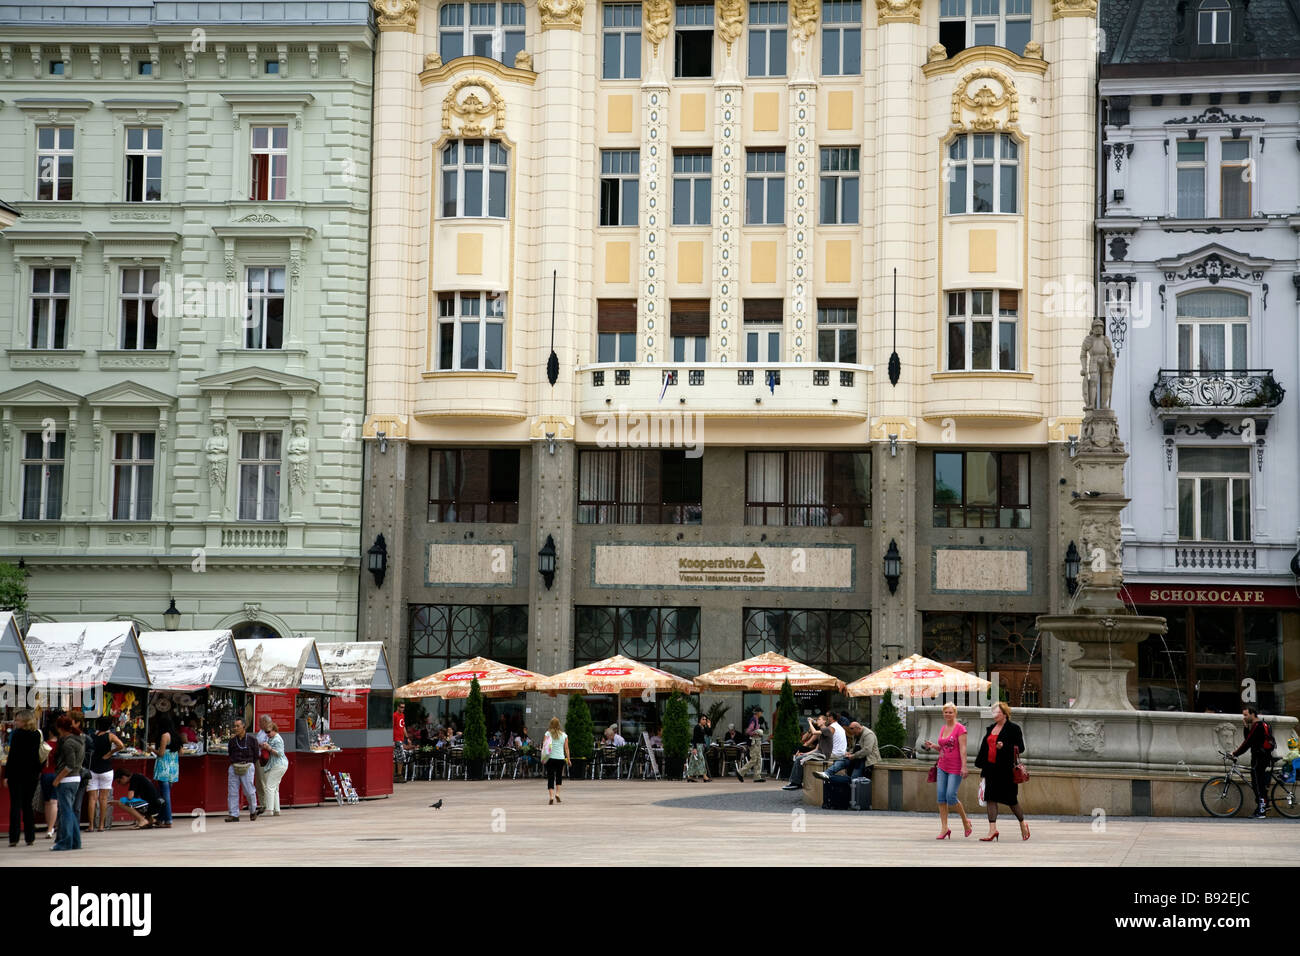 Buildings and fountain in Hlavne nam in Bratislava Slovakia Stock Photo